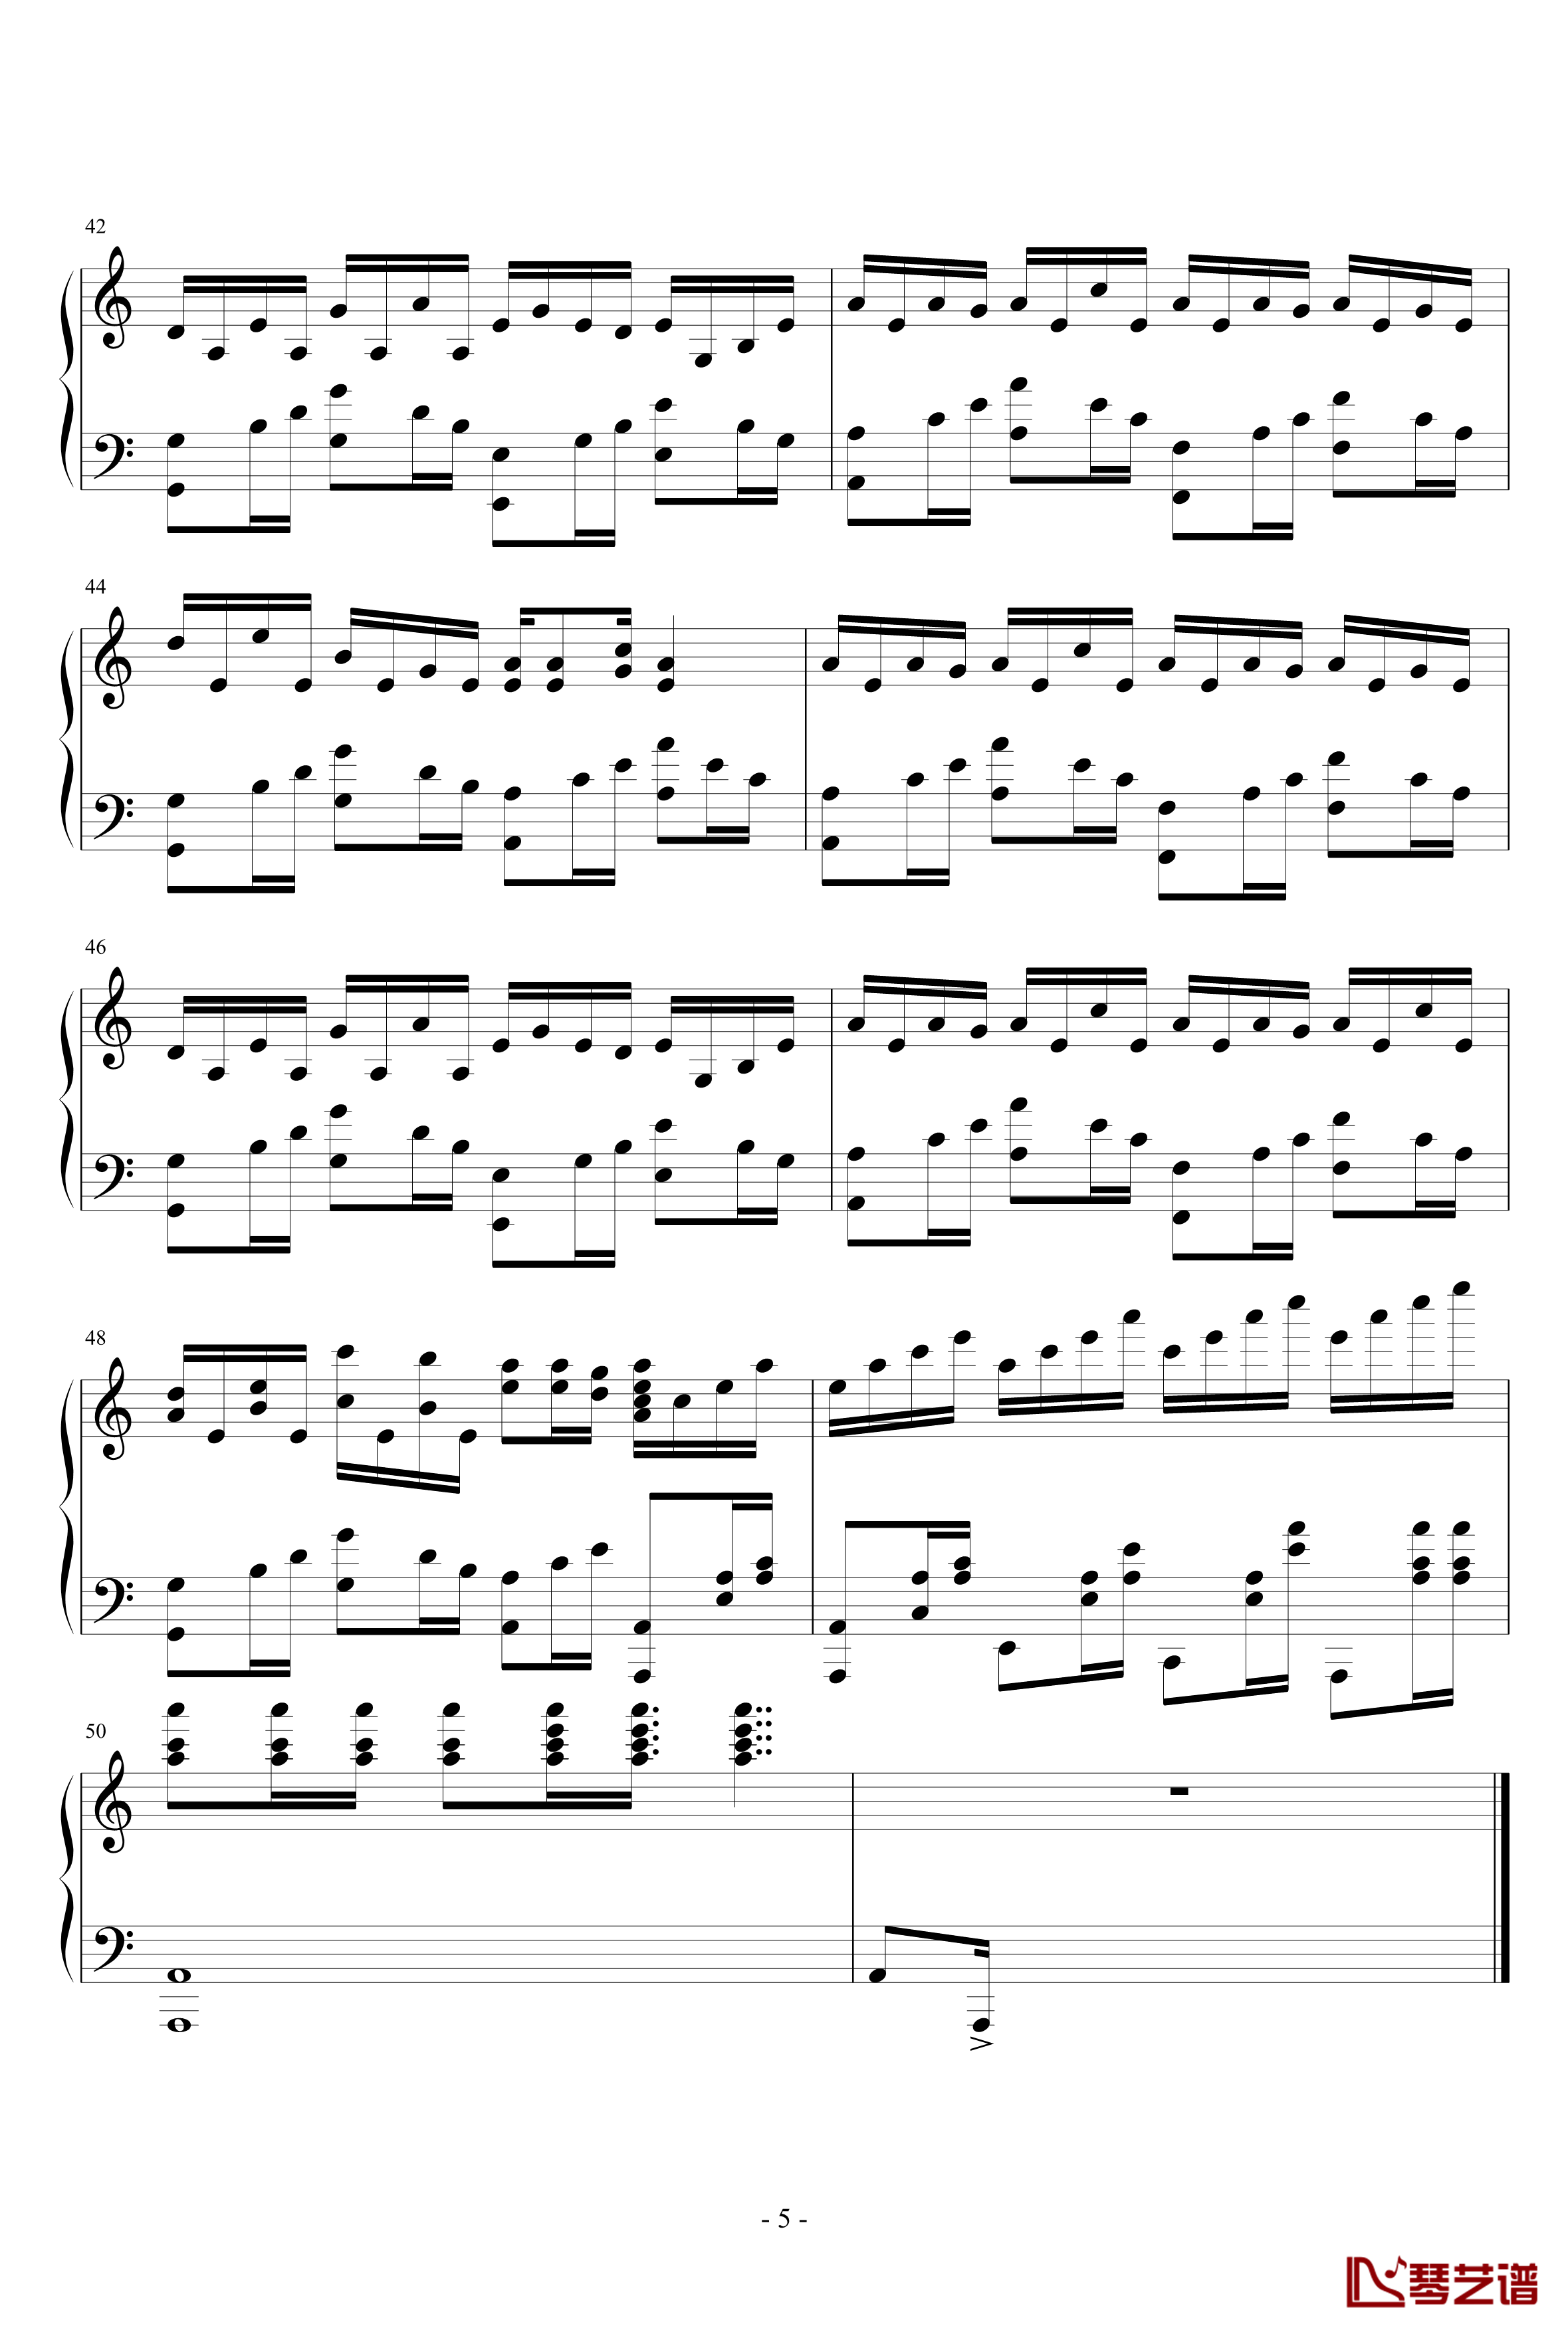 极品钢琴高手练习曲11钢琴谱-追月海-瑜乐星5